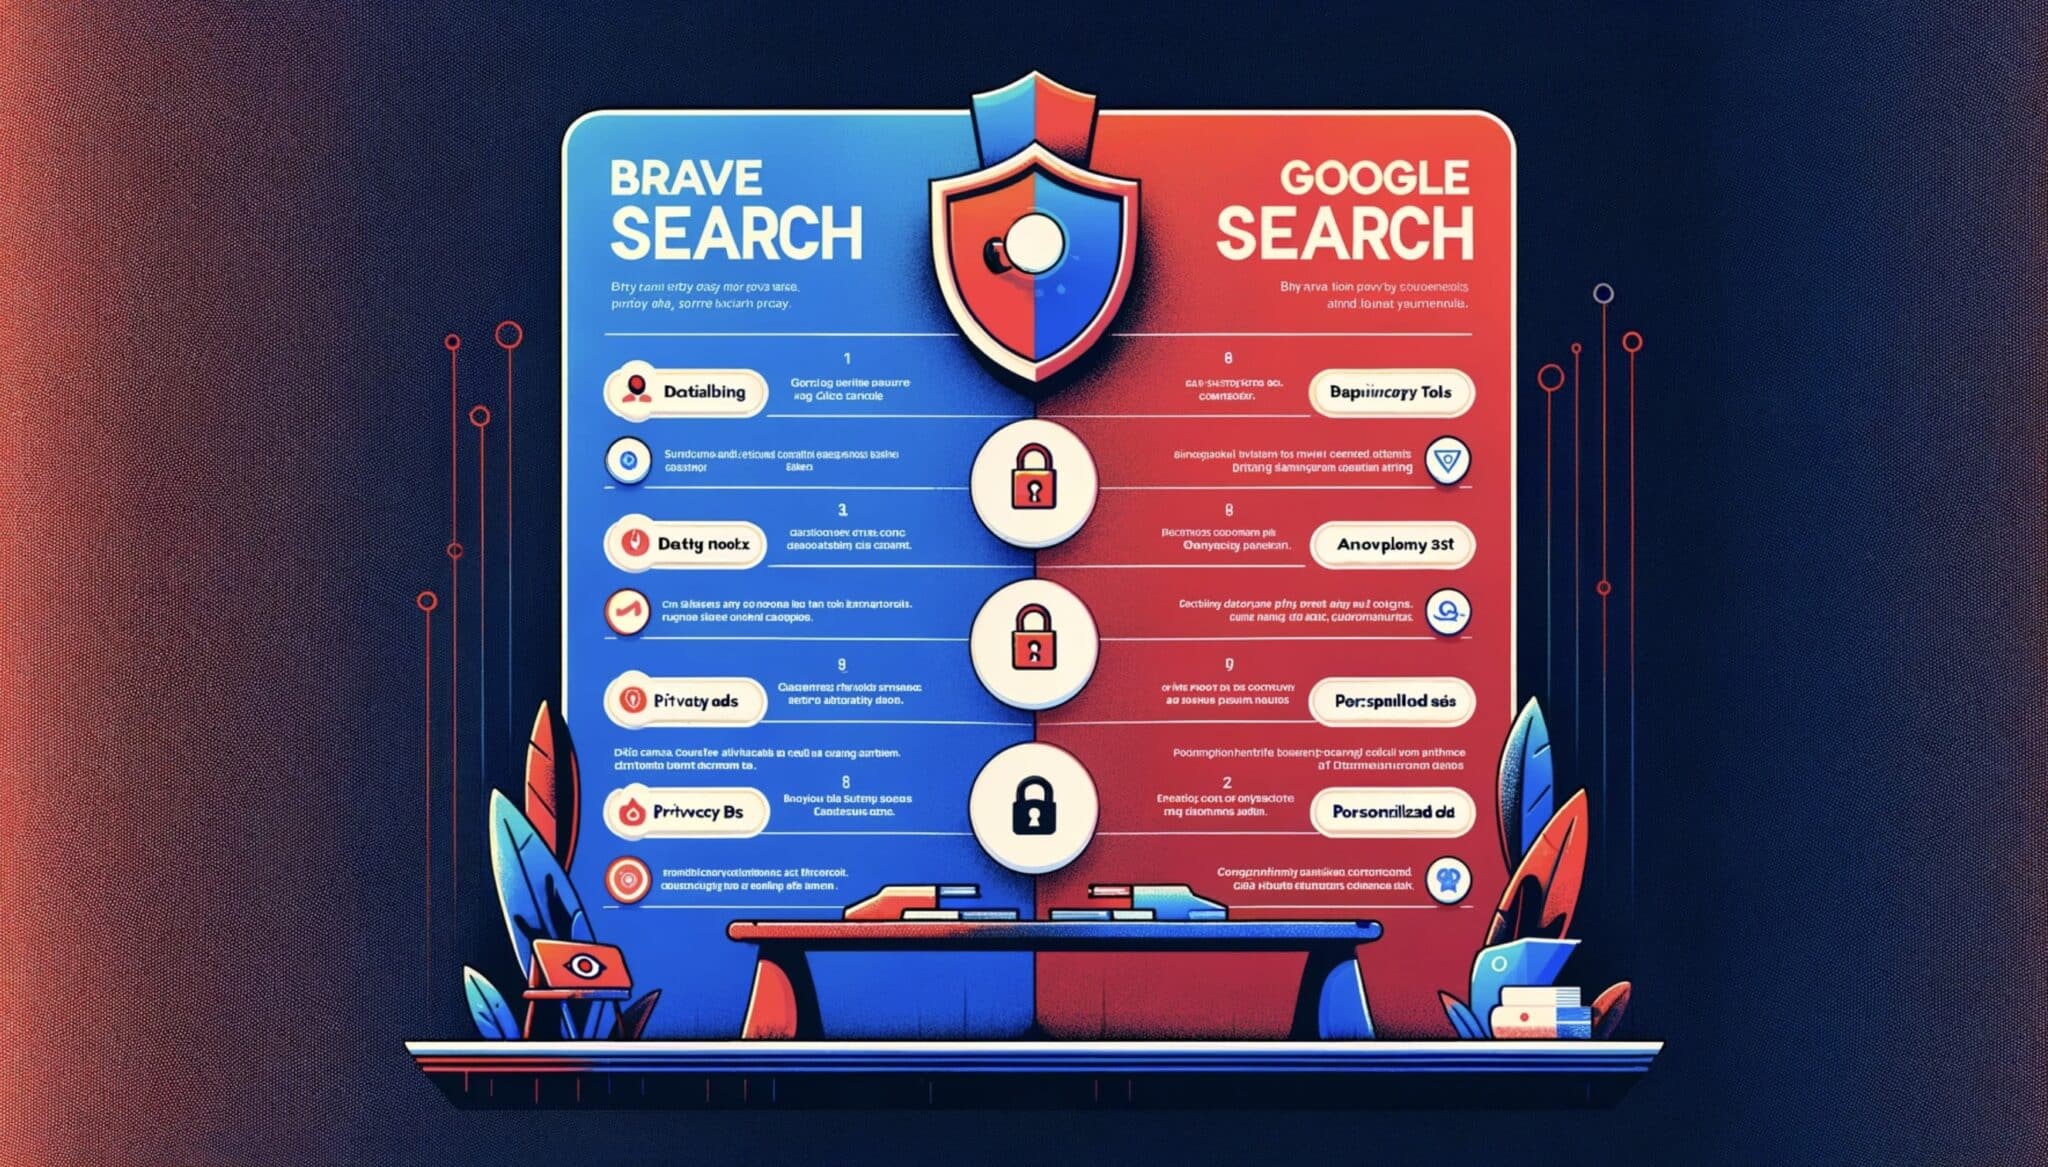 Jak Brave Search wypada na tle Google w zakresie ochrony danych osobowych?